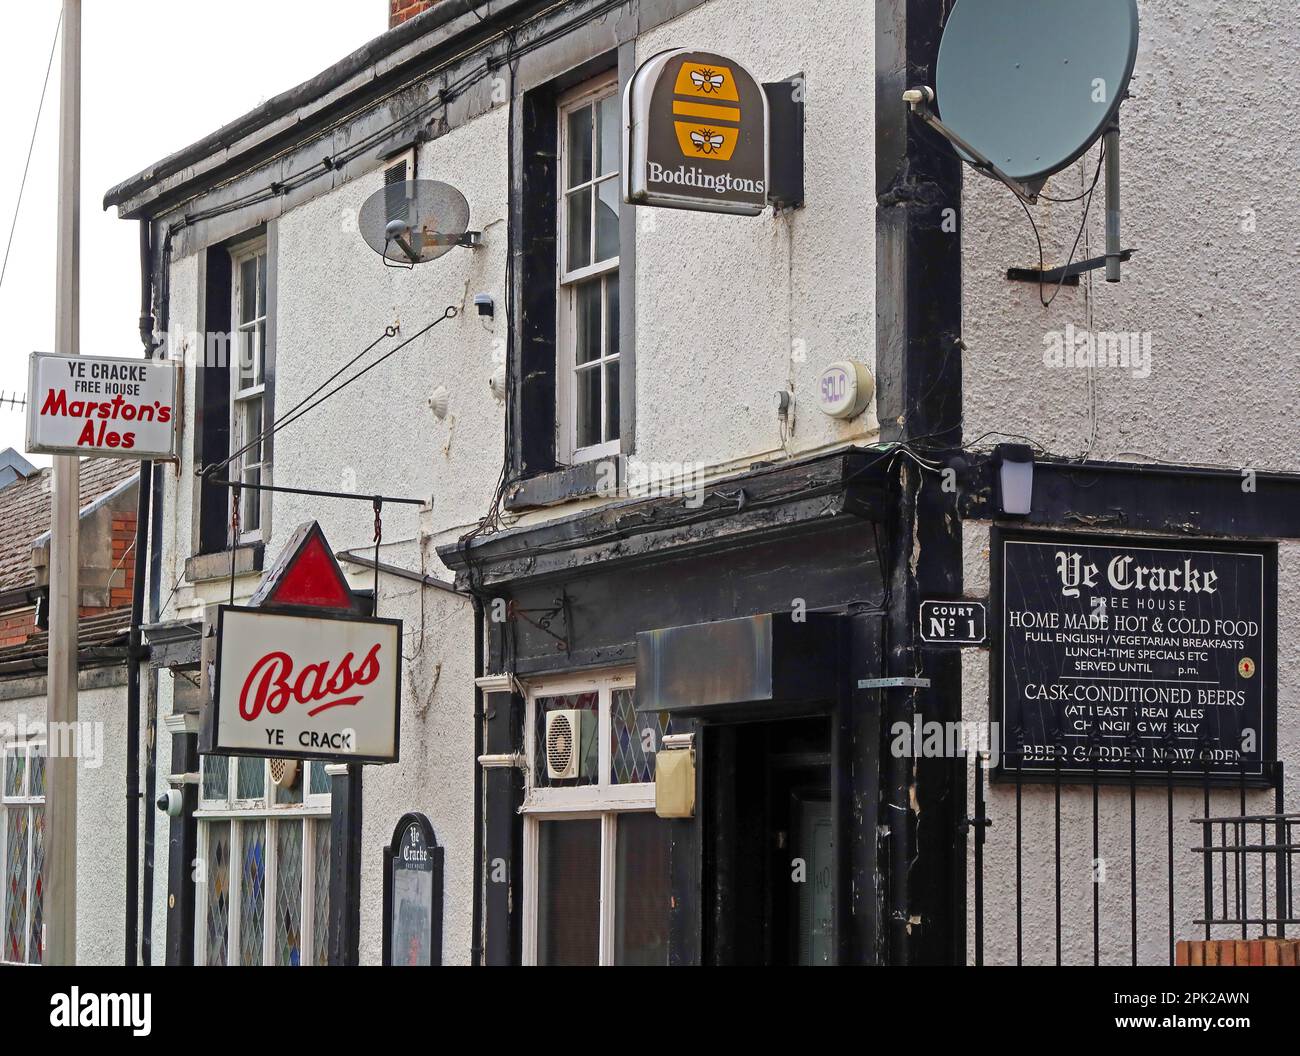 YE crack, pub historique de Liverpool, où John Lennon a bu, Bass, Boddingtons, et Marstons Ales signes, 13 rue Rice, L1 9BB Banque D'Images